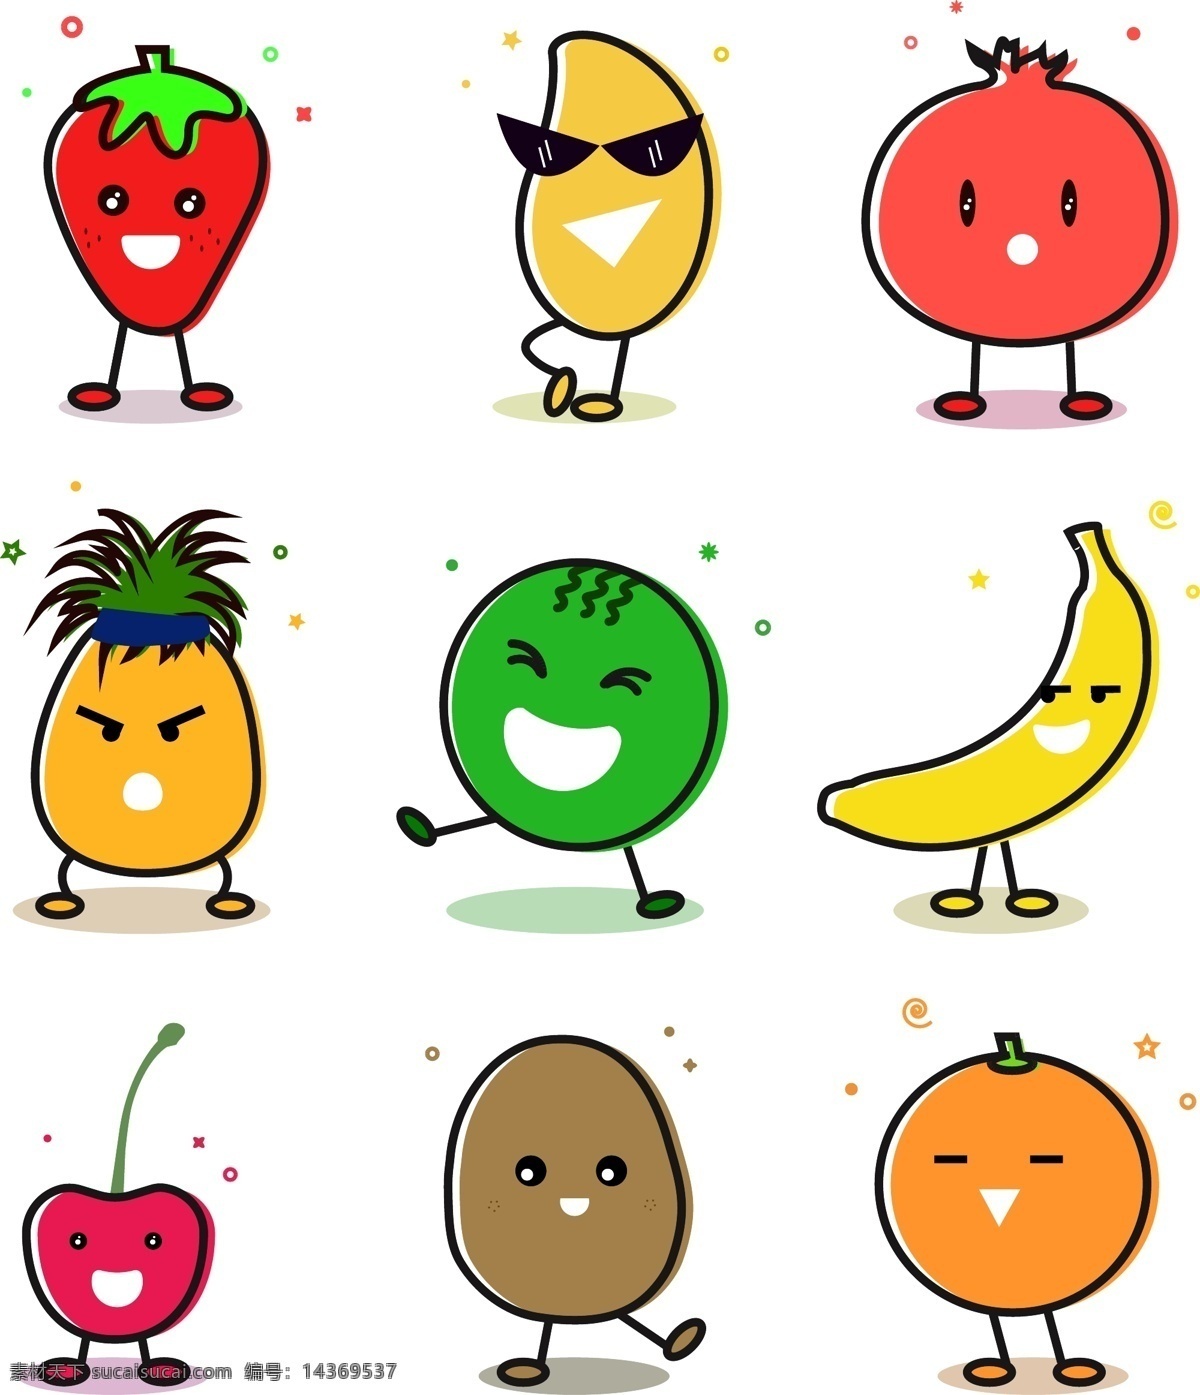 卡通 水果 可爱 形象 矢量图 小孩 幼儿园 草莓 儿童 幼教 芒果 石榴 菠萝 香蕉 樱桃 橙子 泥猴桃 西瓜